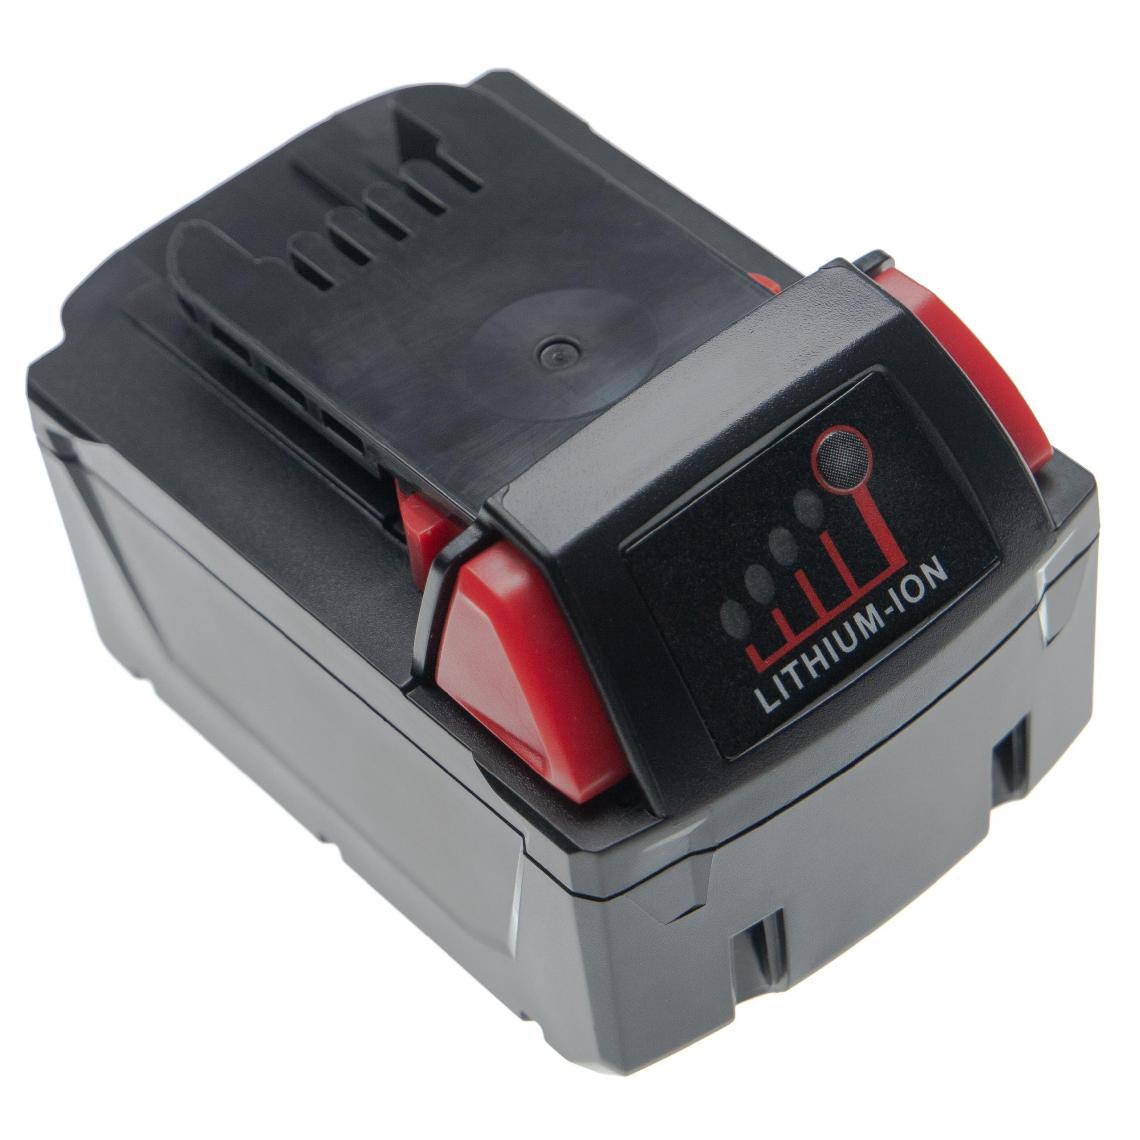 Vhbw - vhbw Batterie compatible avec Milwaukee 0524-52, 0622-20, 0622-24, 0624-20, 0624-24, 0627-20, 0627-24 outil électrique (4000mAh Li-ion 18V) - Clouterie